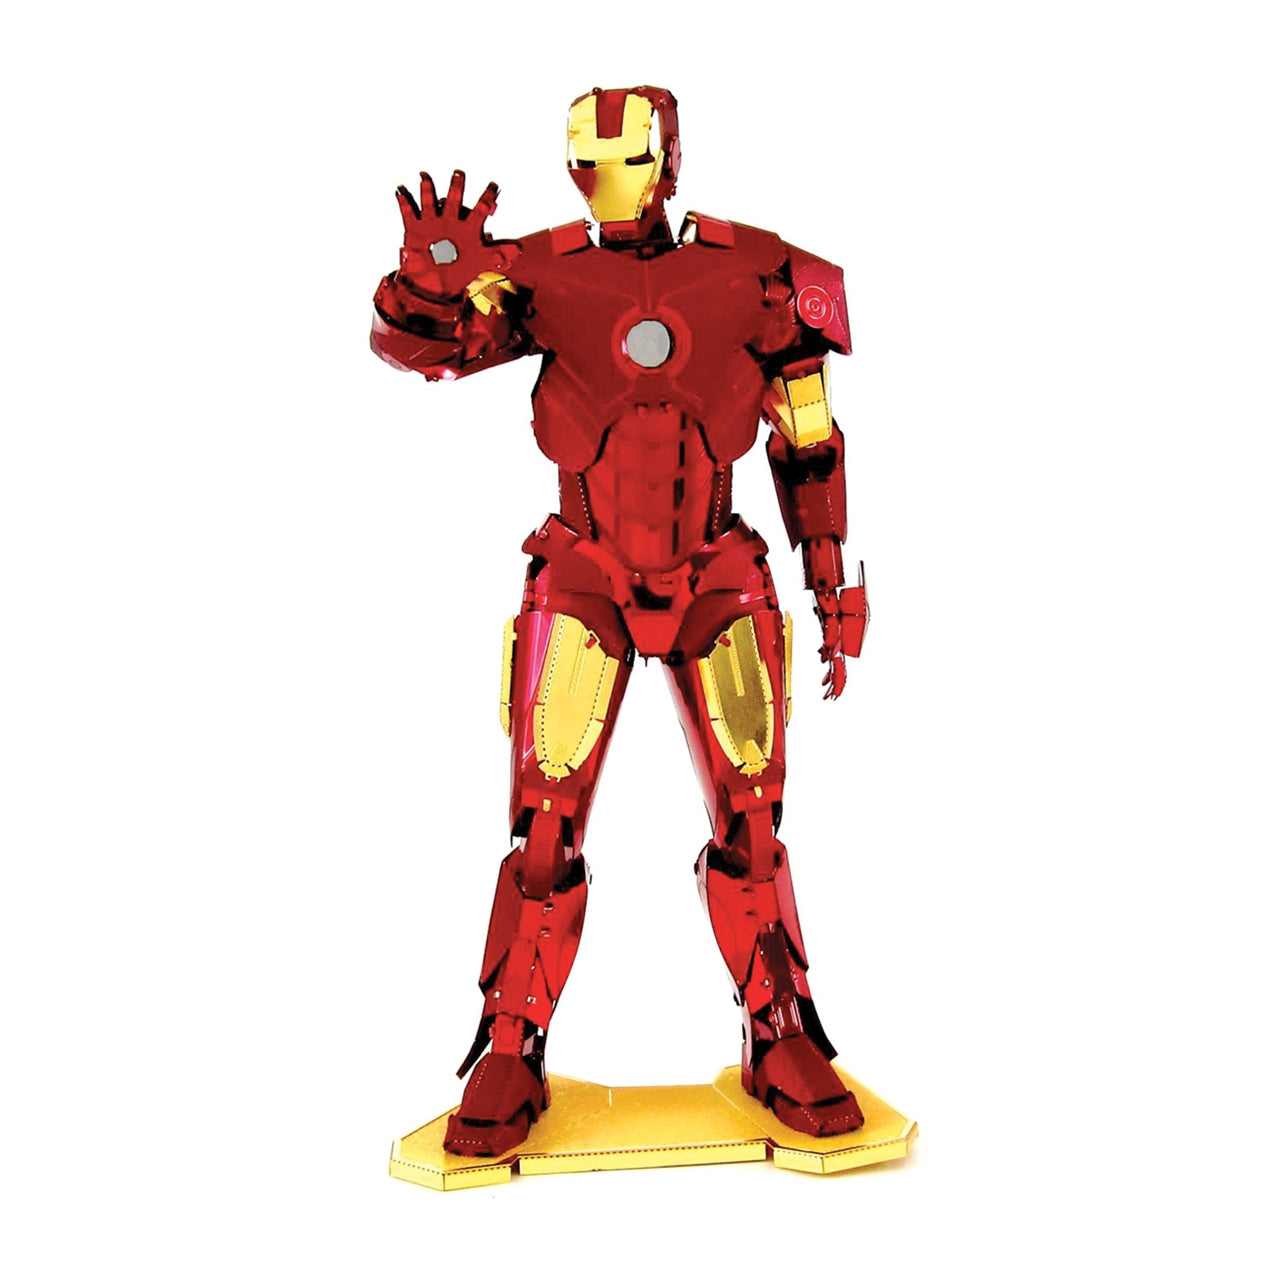 Metal Earth - Iron Man    